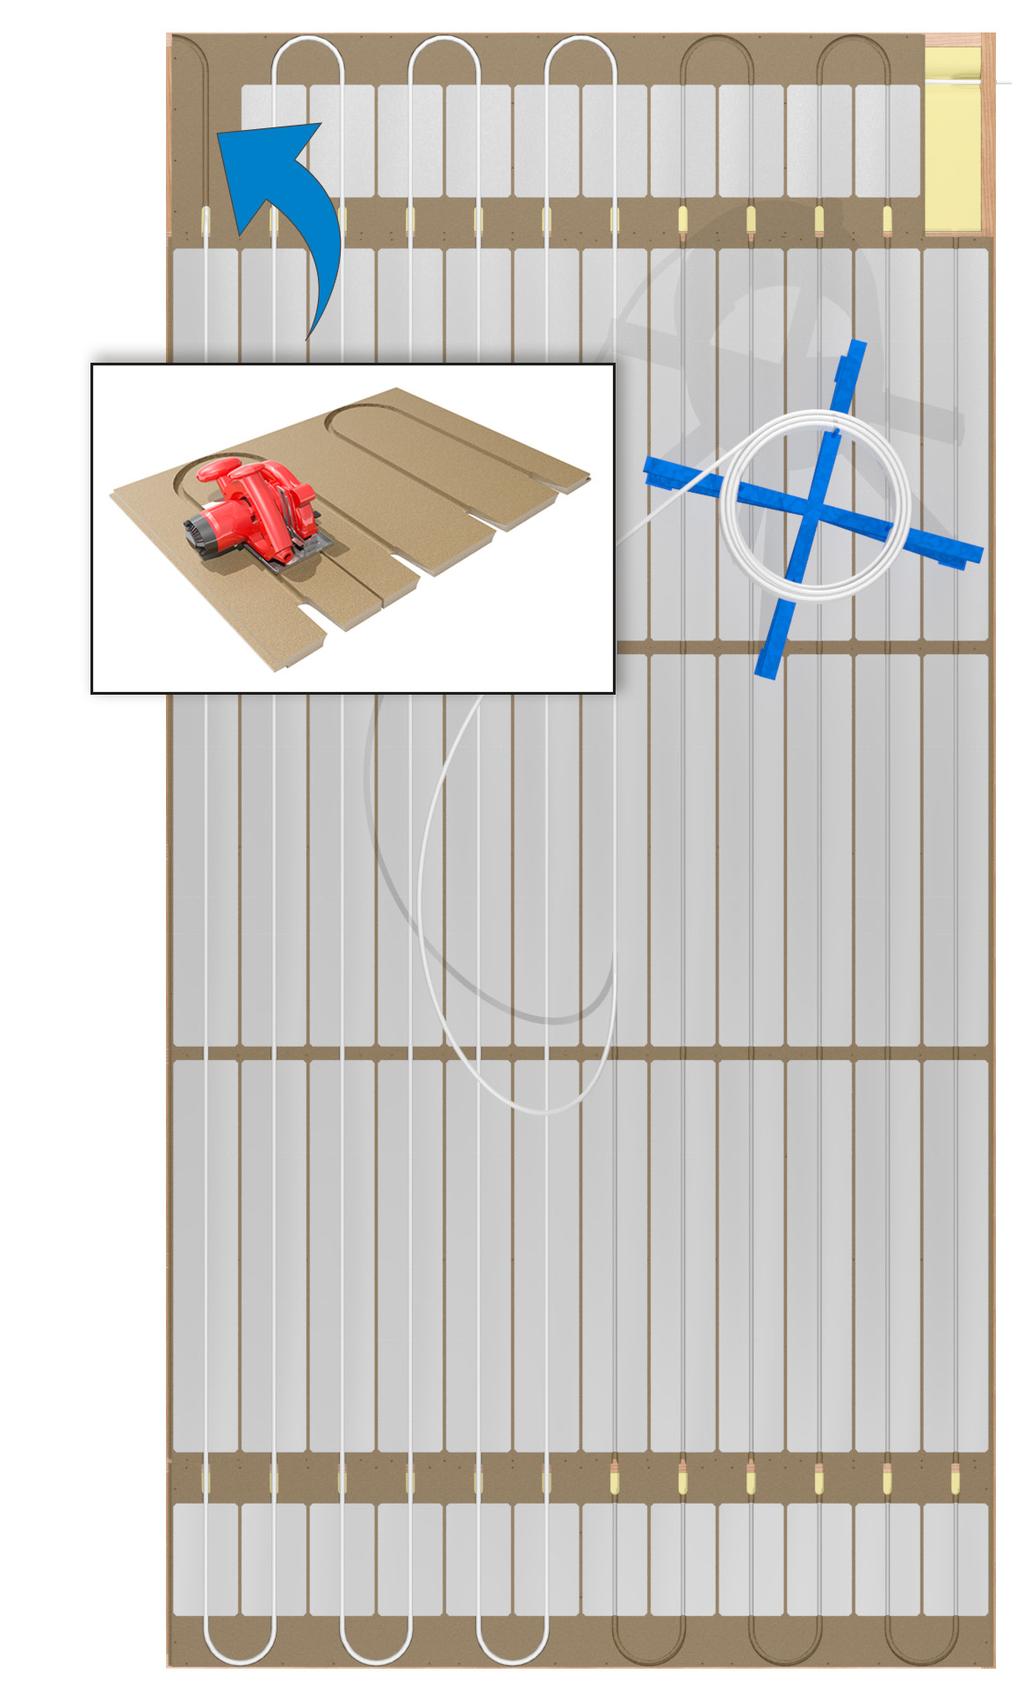 Kytke lattialämmitysputki jakotukkiin ja vedä putki uralevyyn palkiston avoimesta väliköstä kuvan osoittamalla tavalla. Putkiasennuksessa käytetään apuvälineenä LK Putkikieppiä.